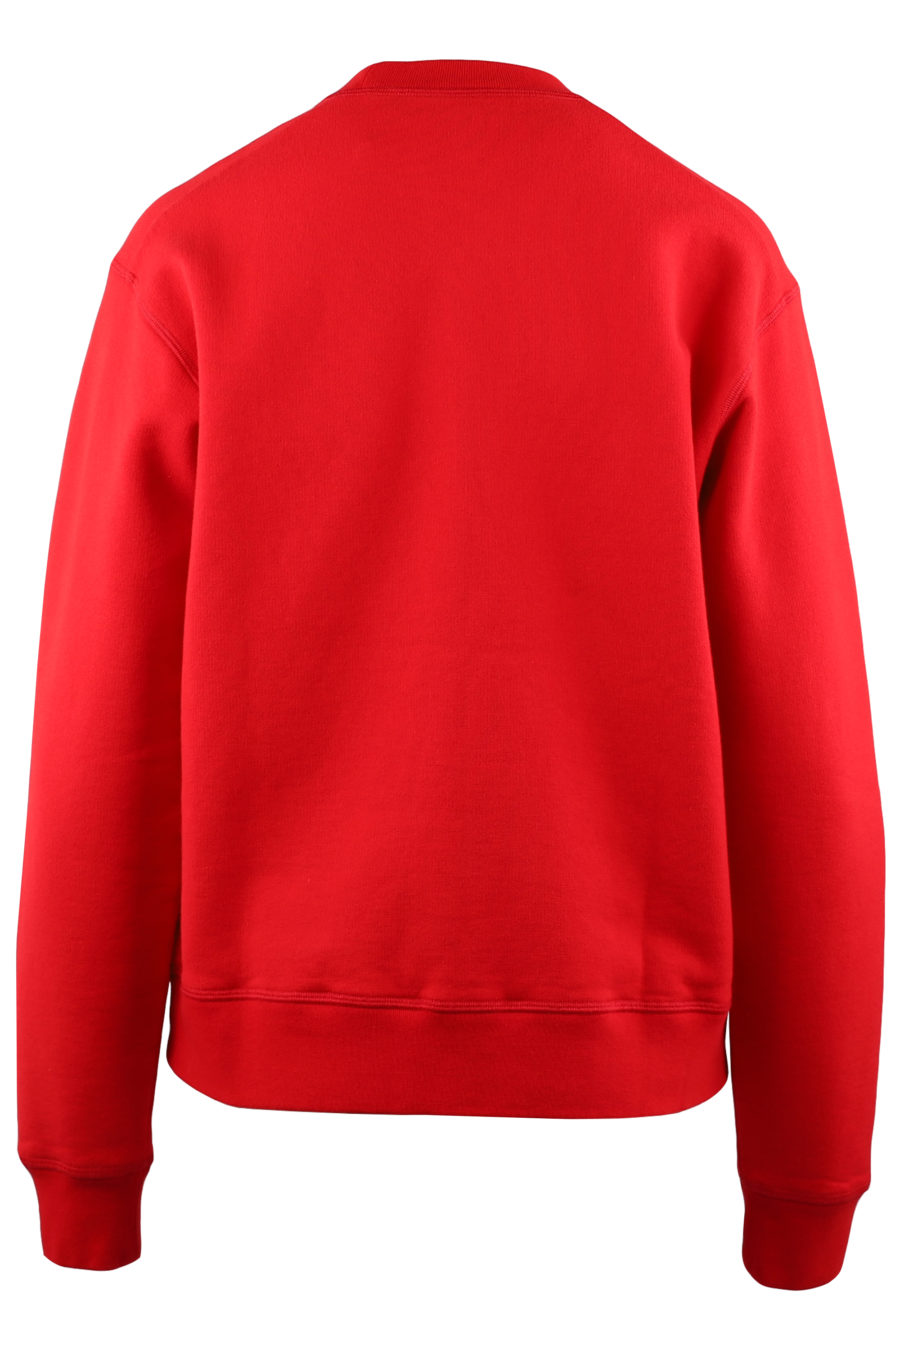 Rotes Sweatshirt mit weißem "Icon"-Logo - d1a1ade338db9a20c5168c8e93085fce310626868c